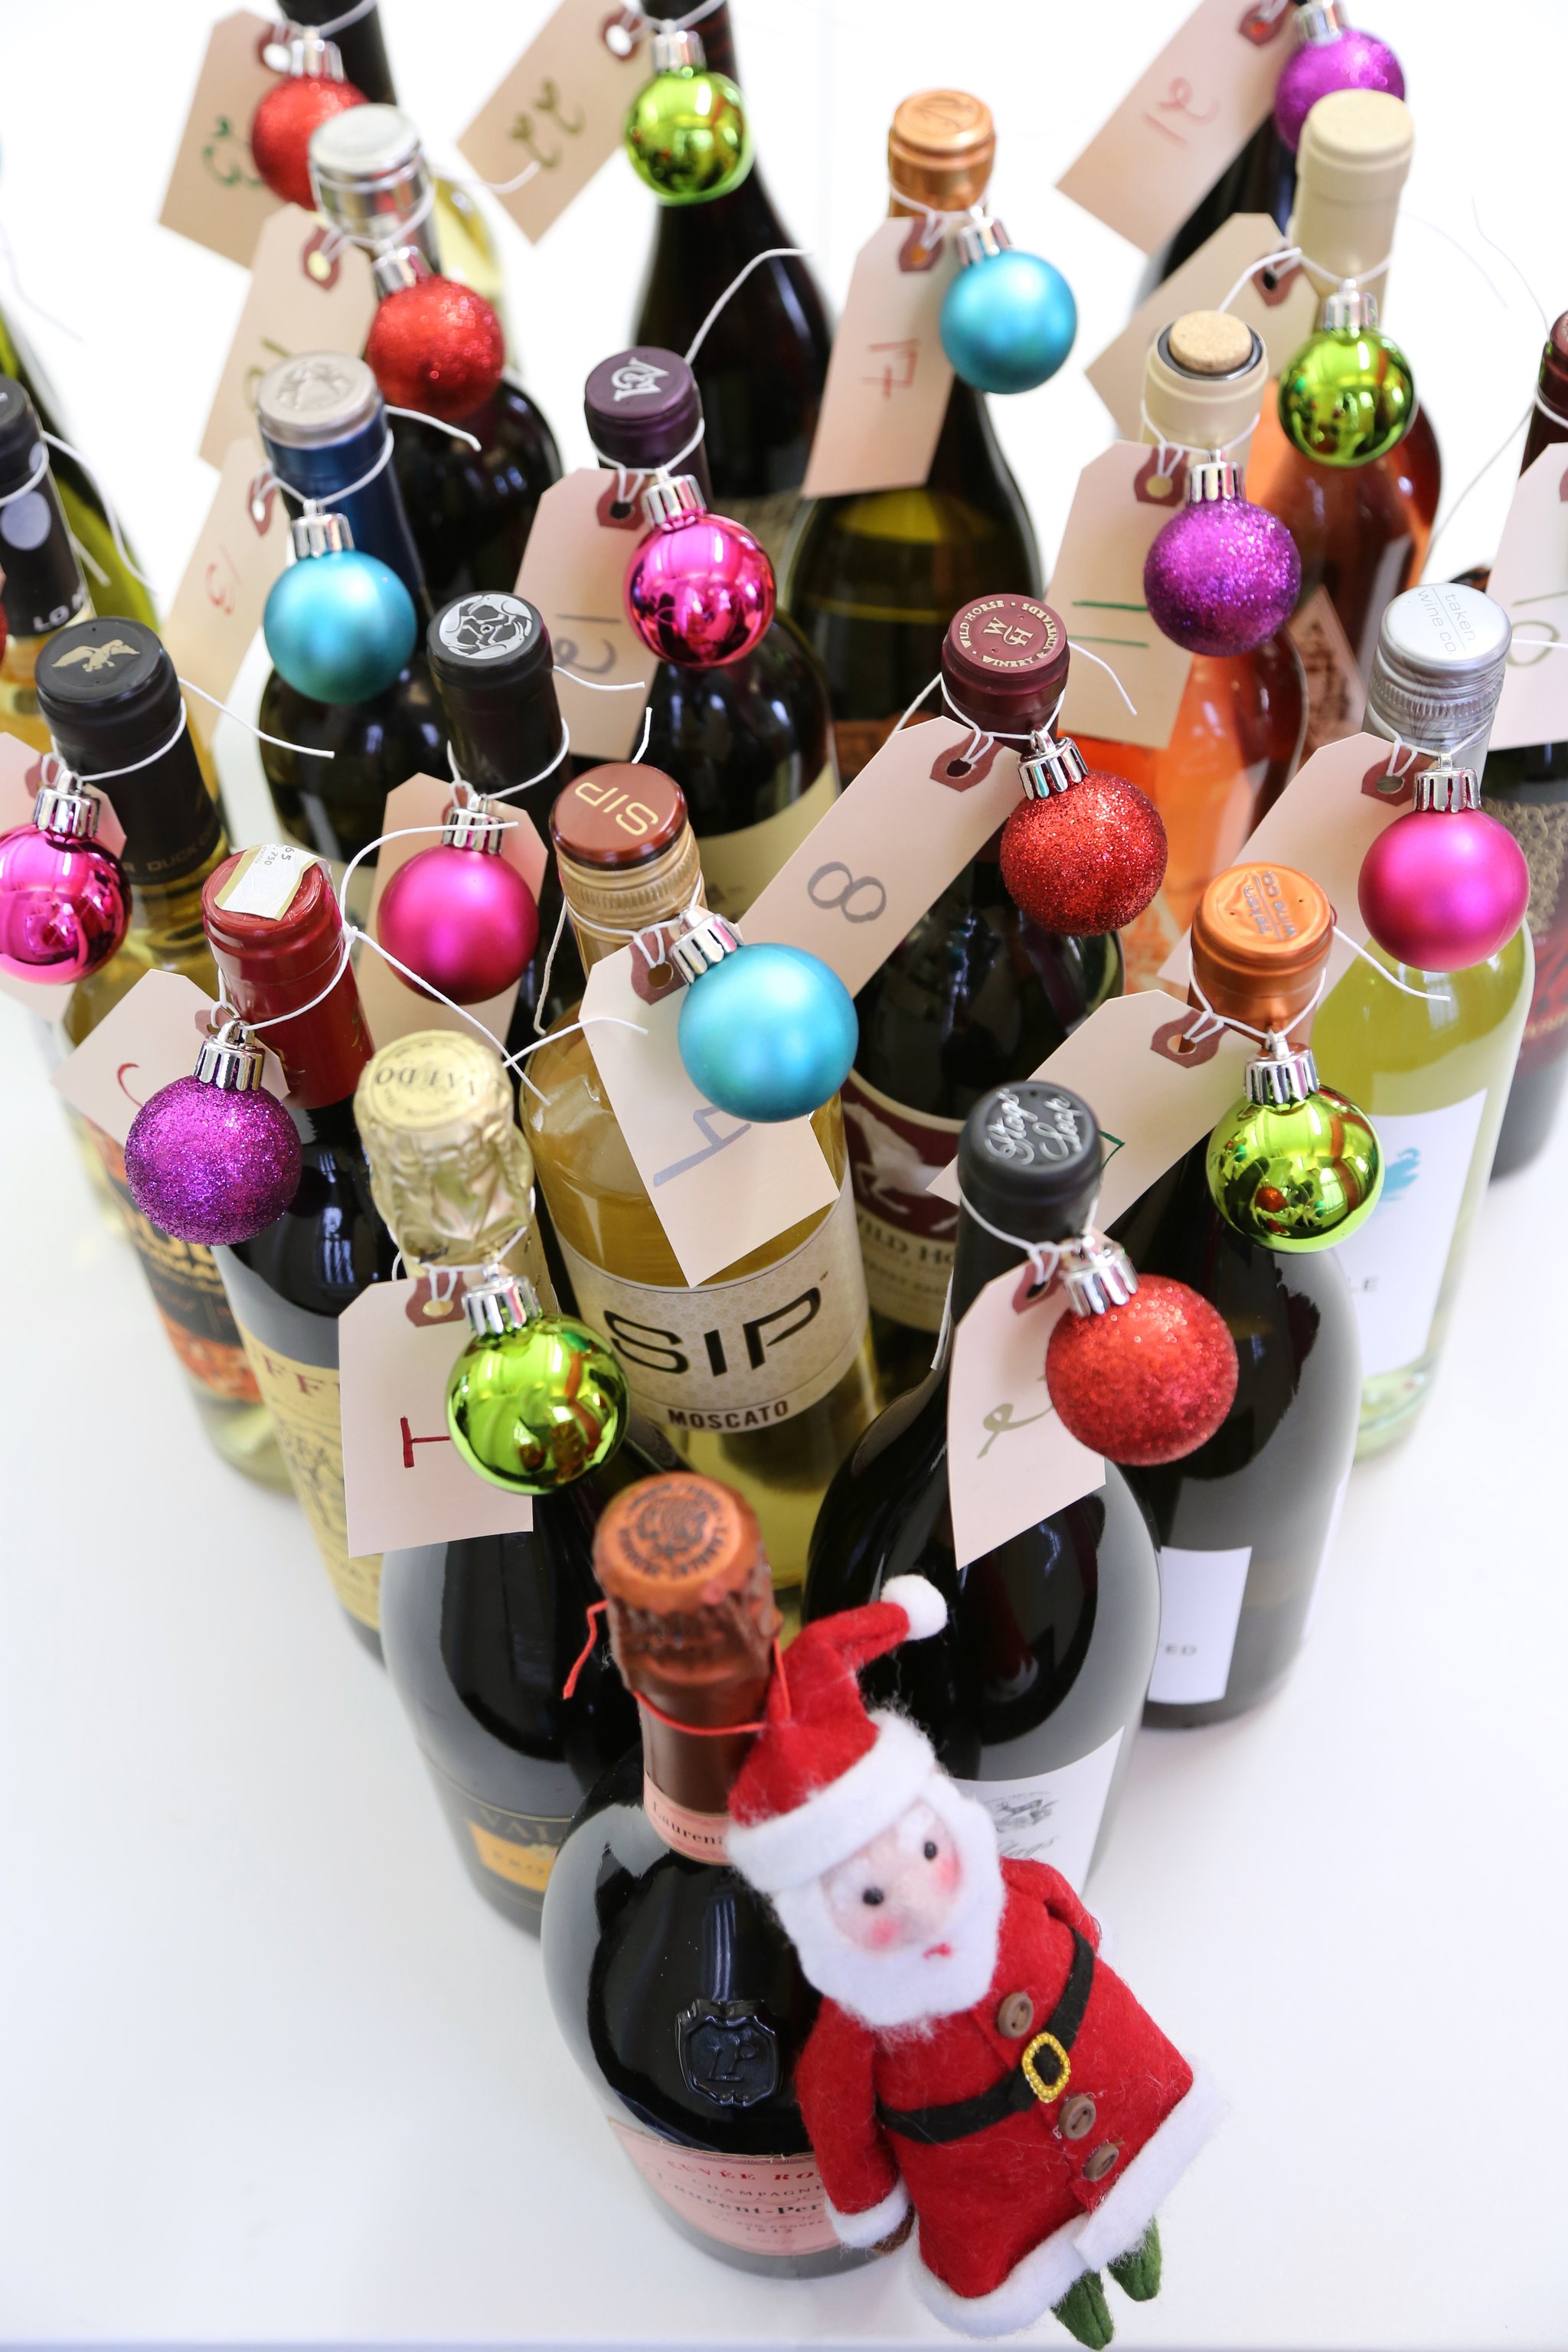 DIY wine bottle advent calendar (via www.popsugar.com)